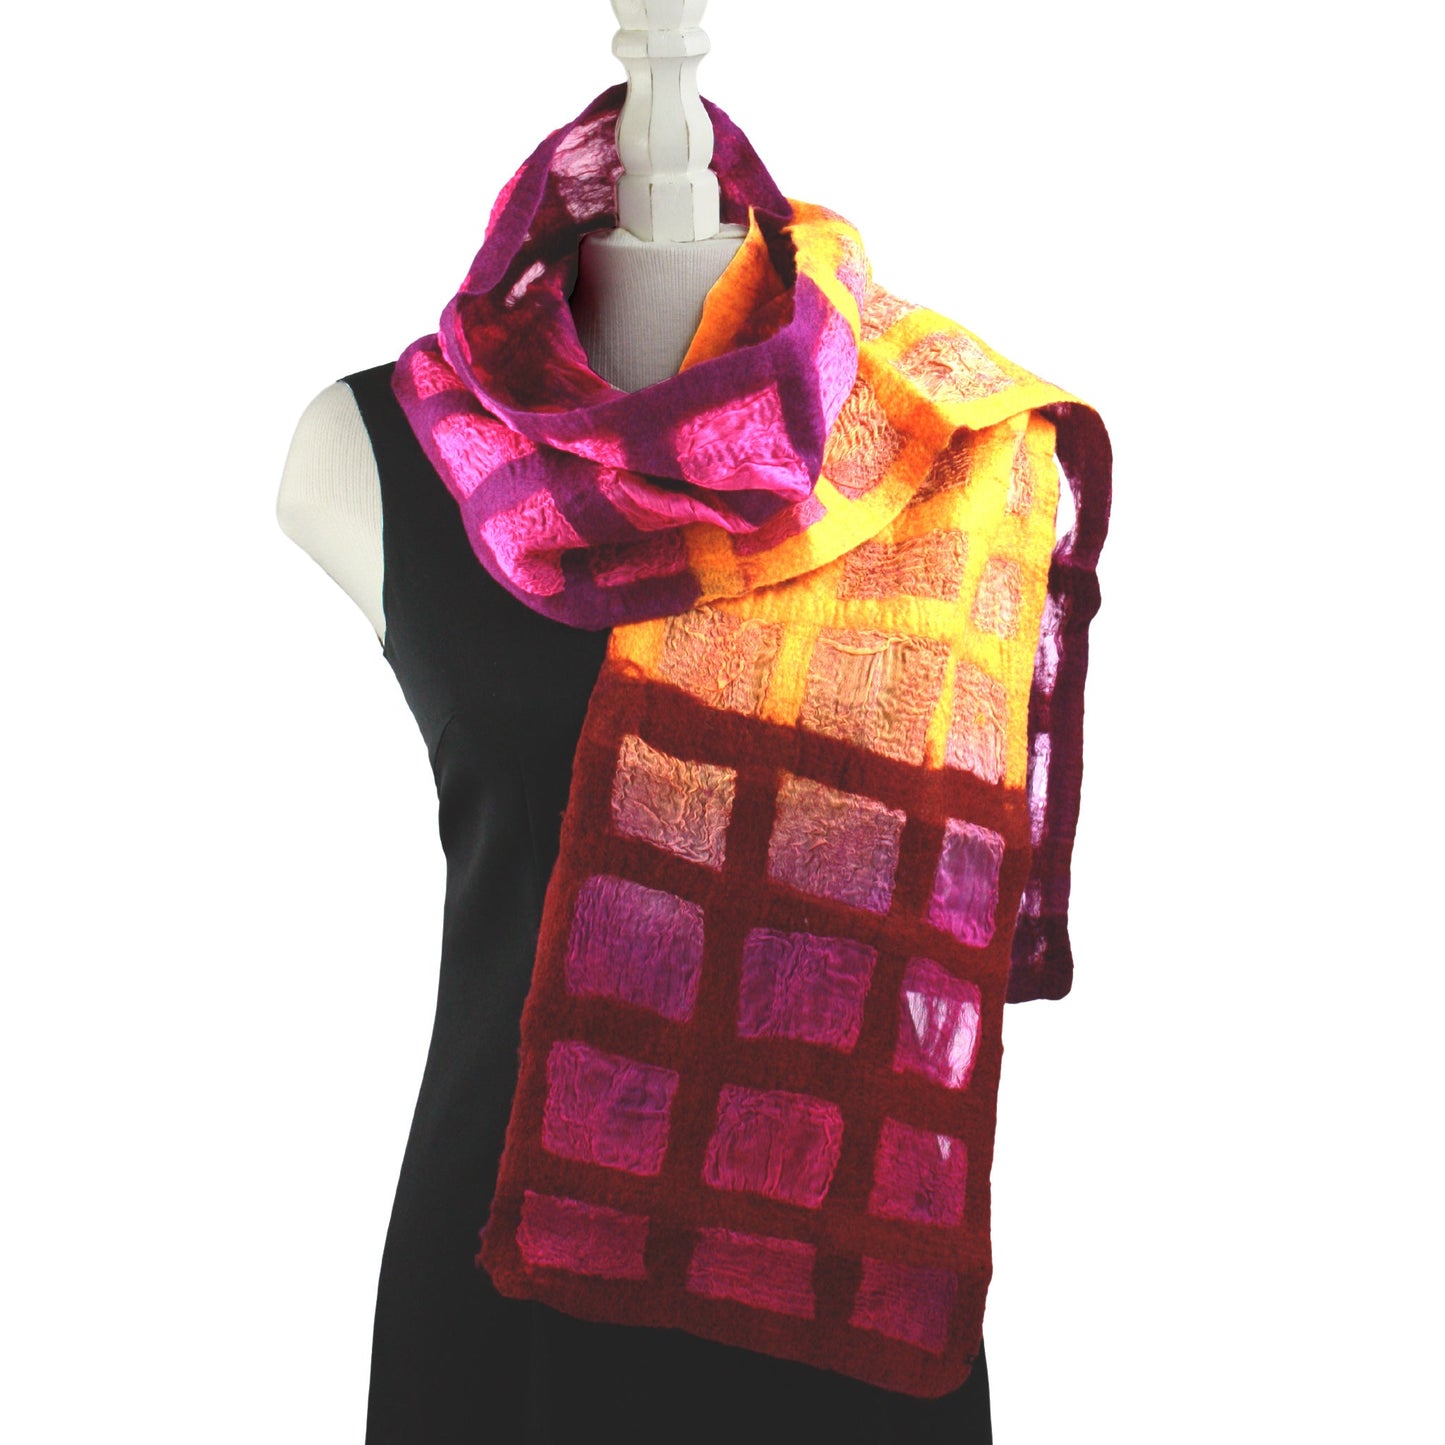 Windowpane scarf in warm tones